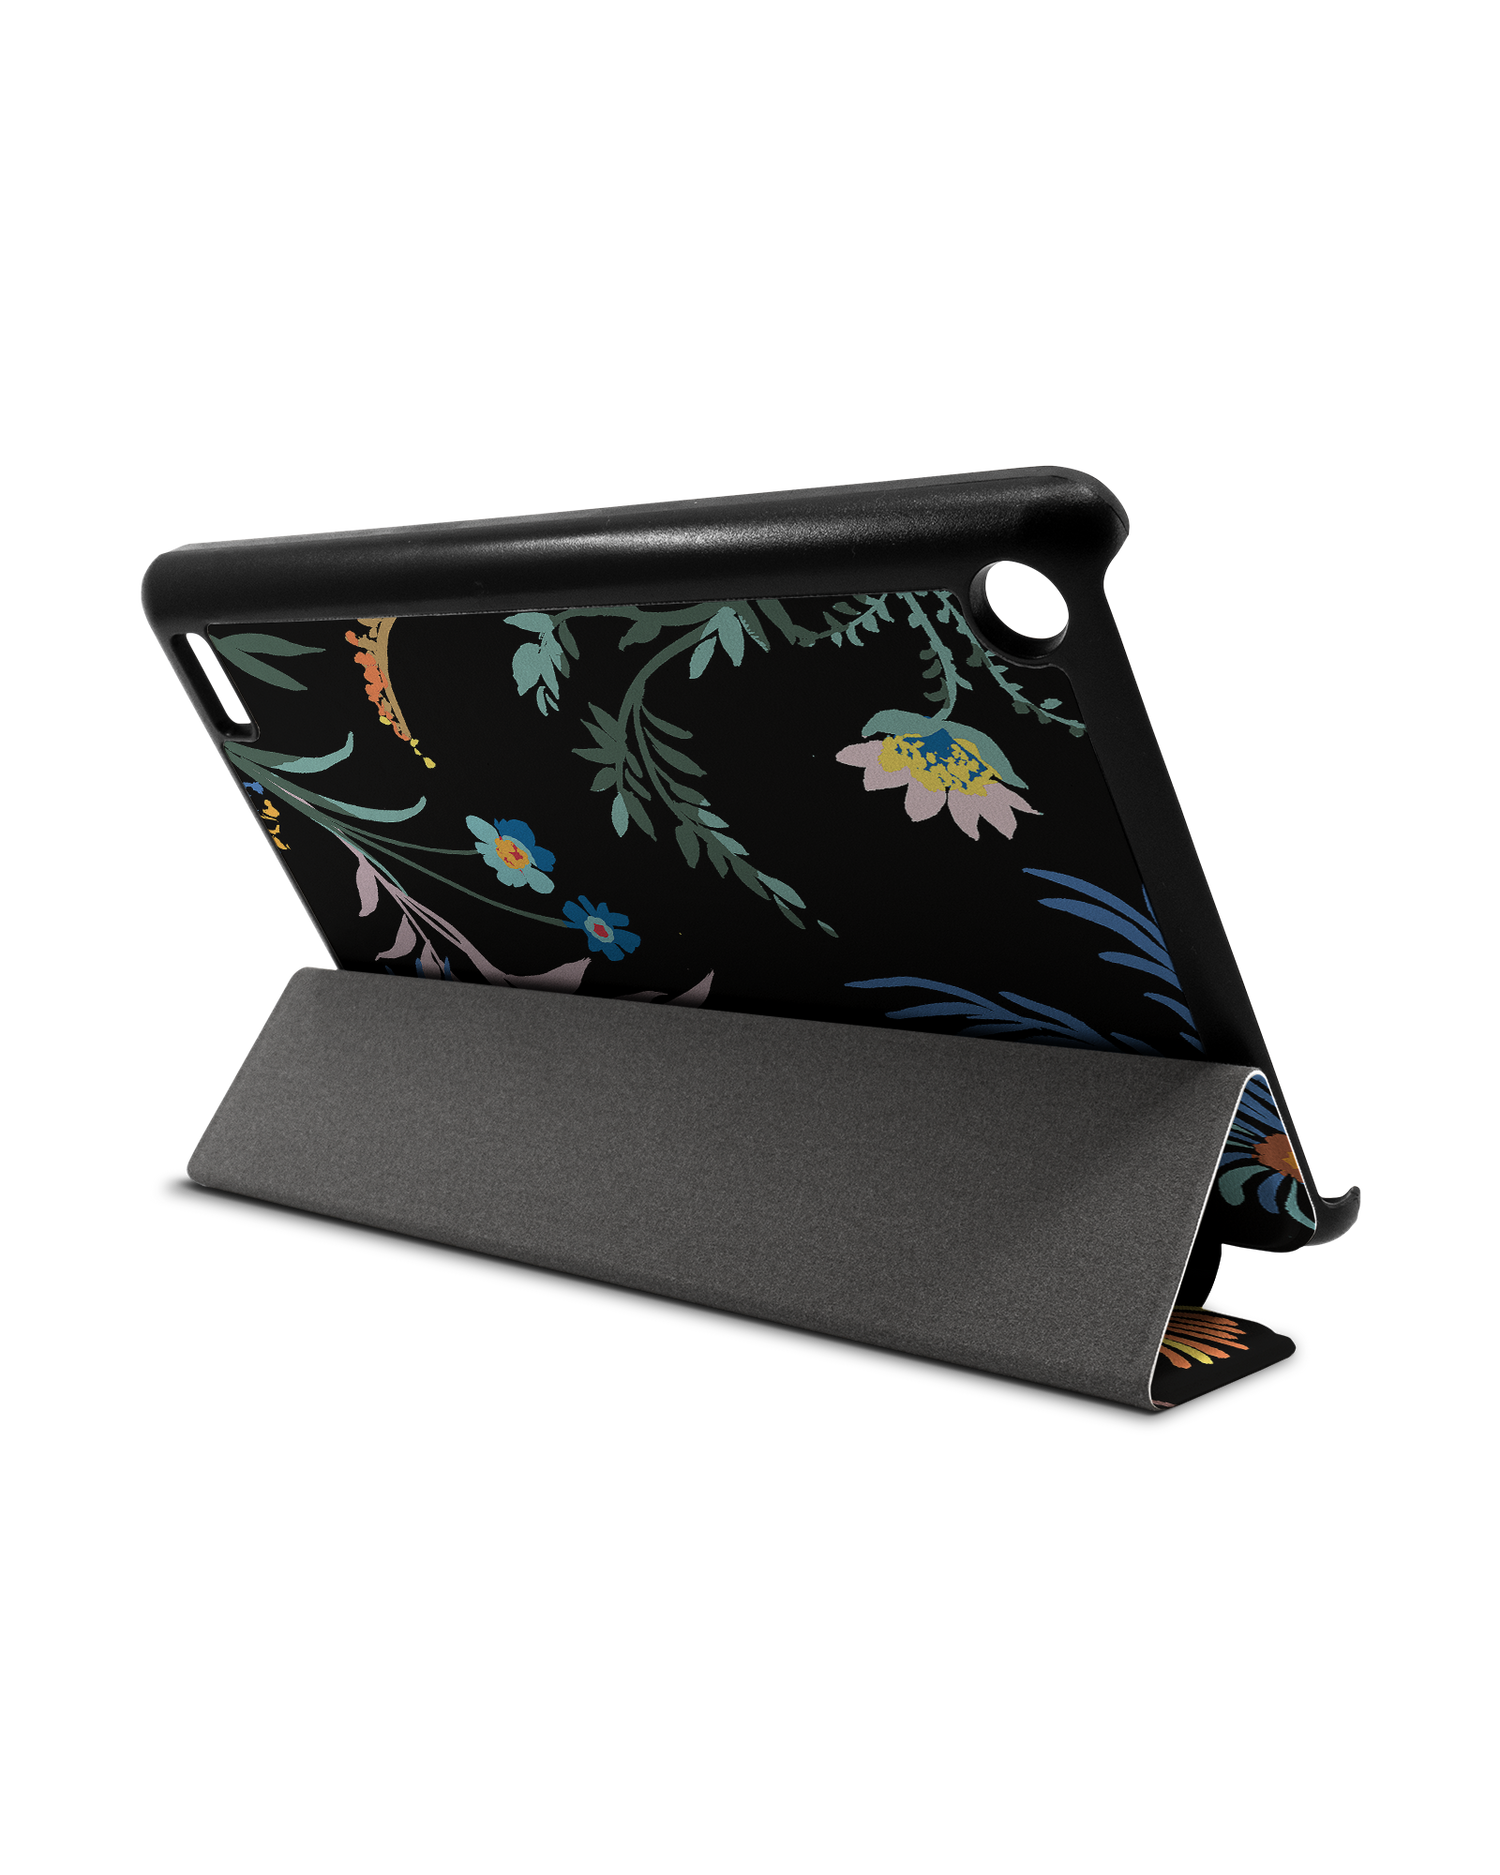 Woodland Spring Floral Tablet Smart Case für Amazon Fire 7: Aufgestellt im Querformat